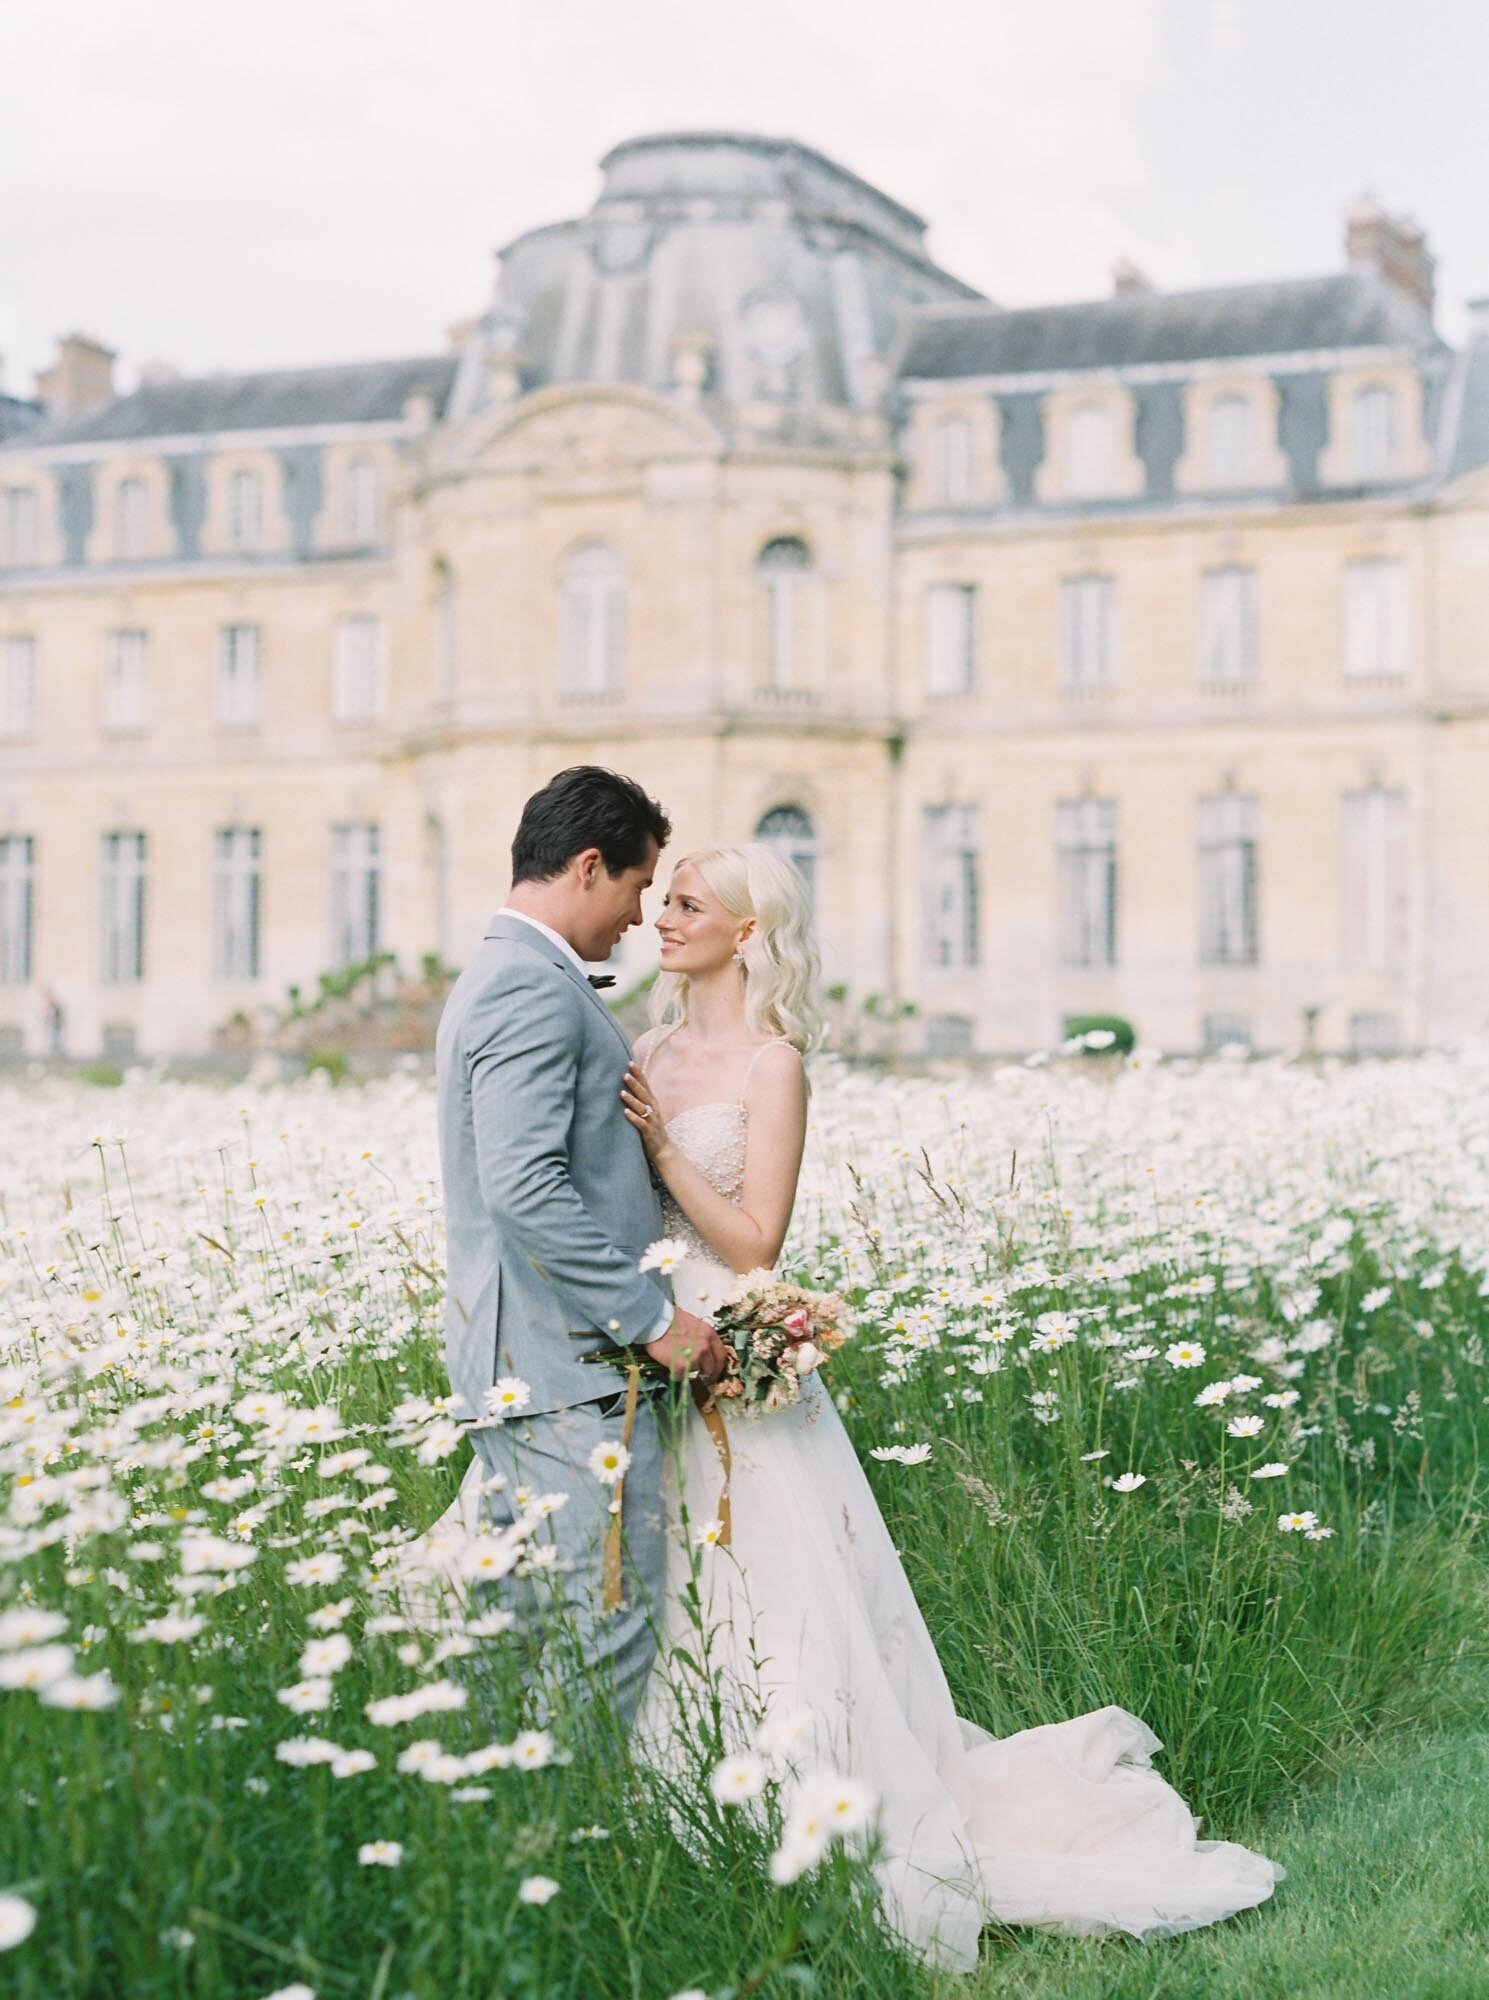 Bride and groom in a margarita flower field